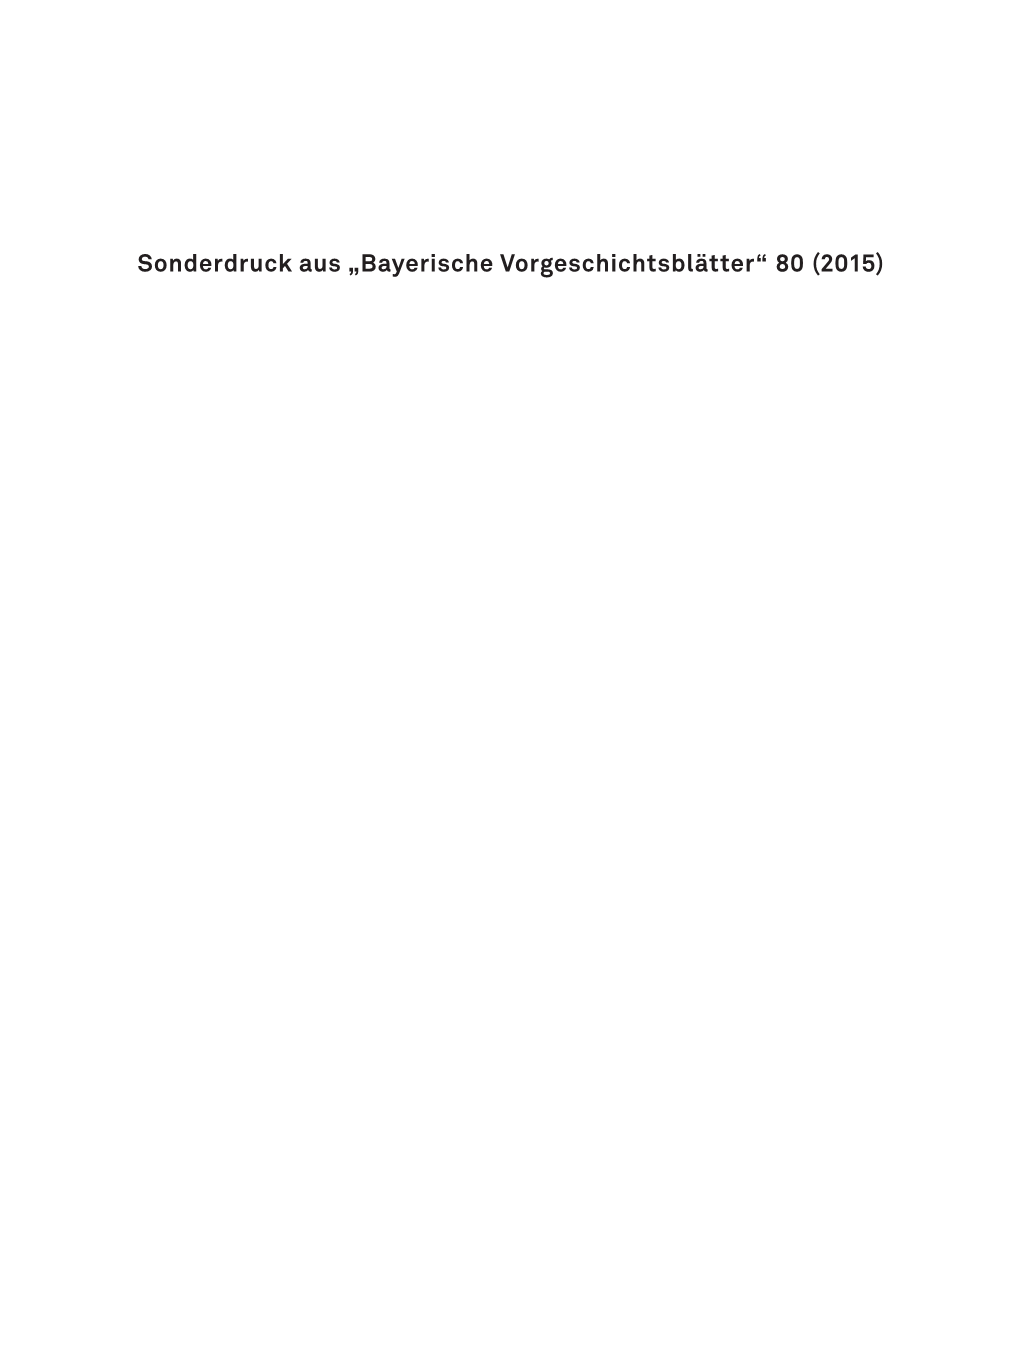 „Bayerische Vorgeschichtsblätter“ 80 (2015)